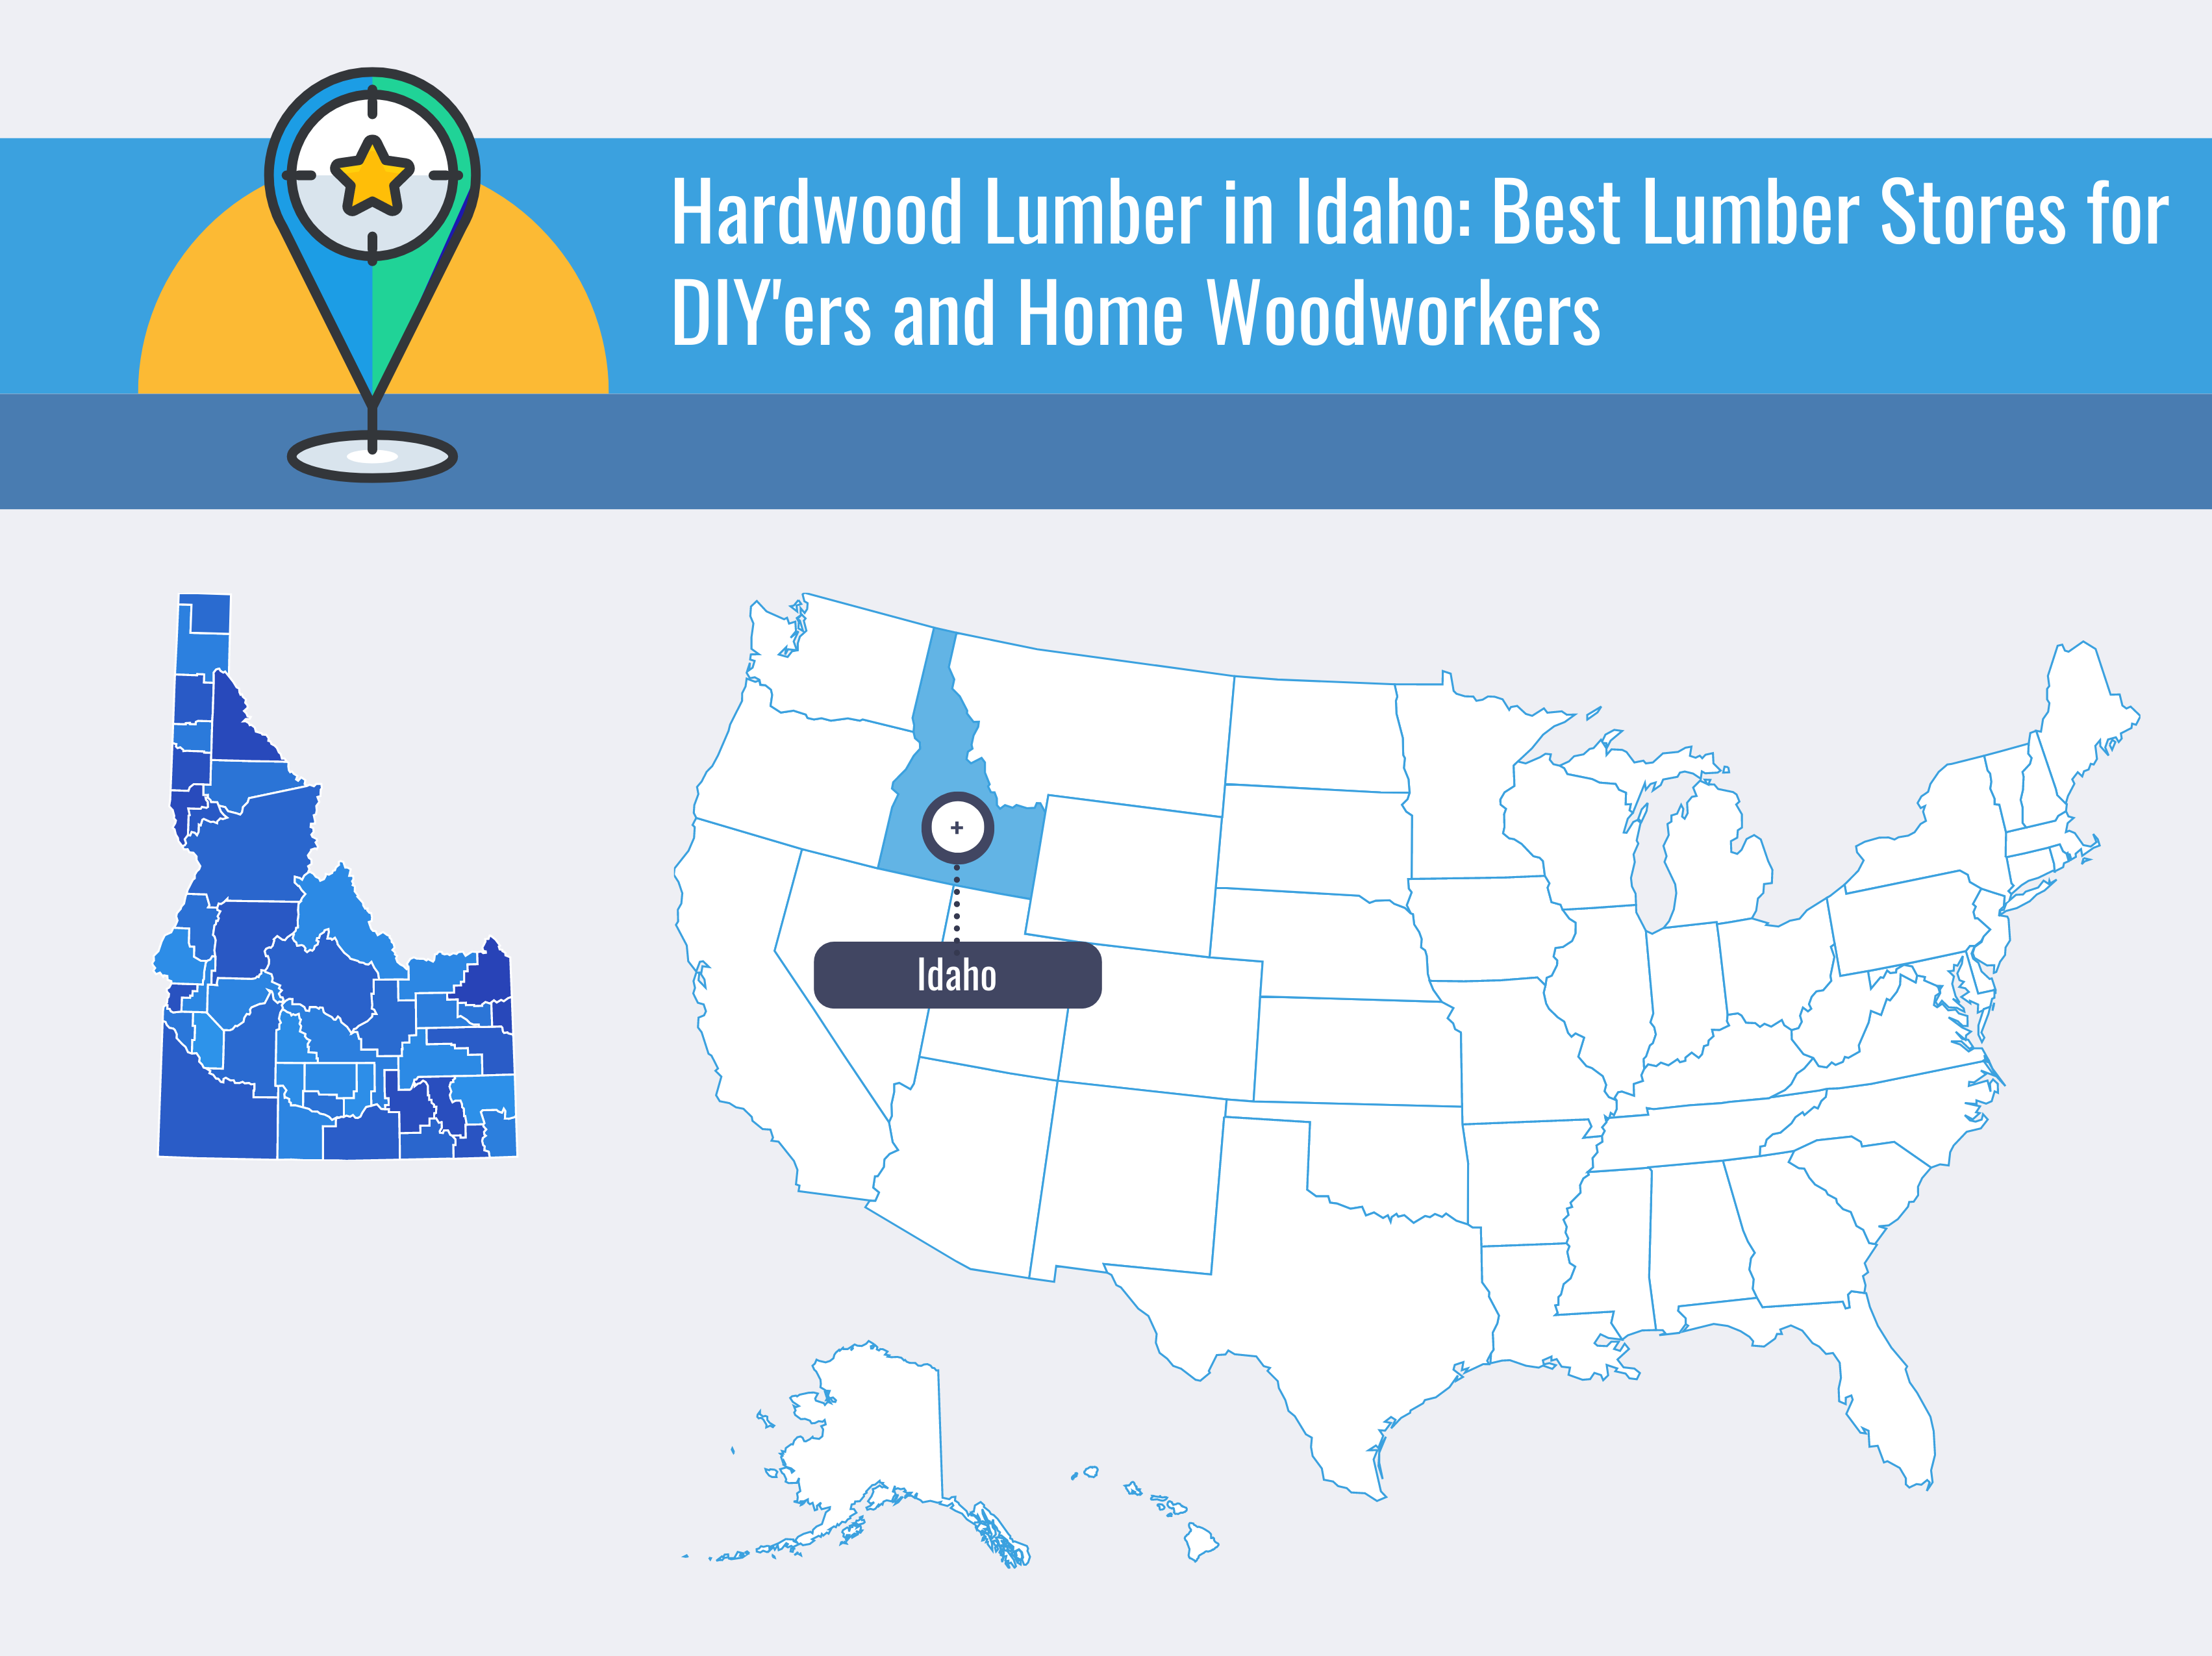 Hardwood Lumber in Idaho Best Lumber Stores